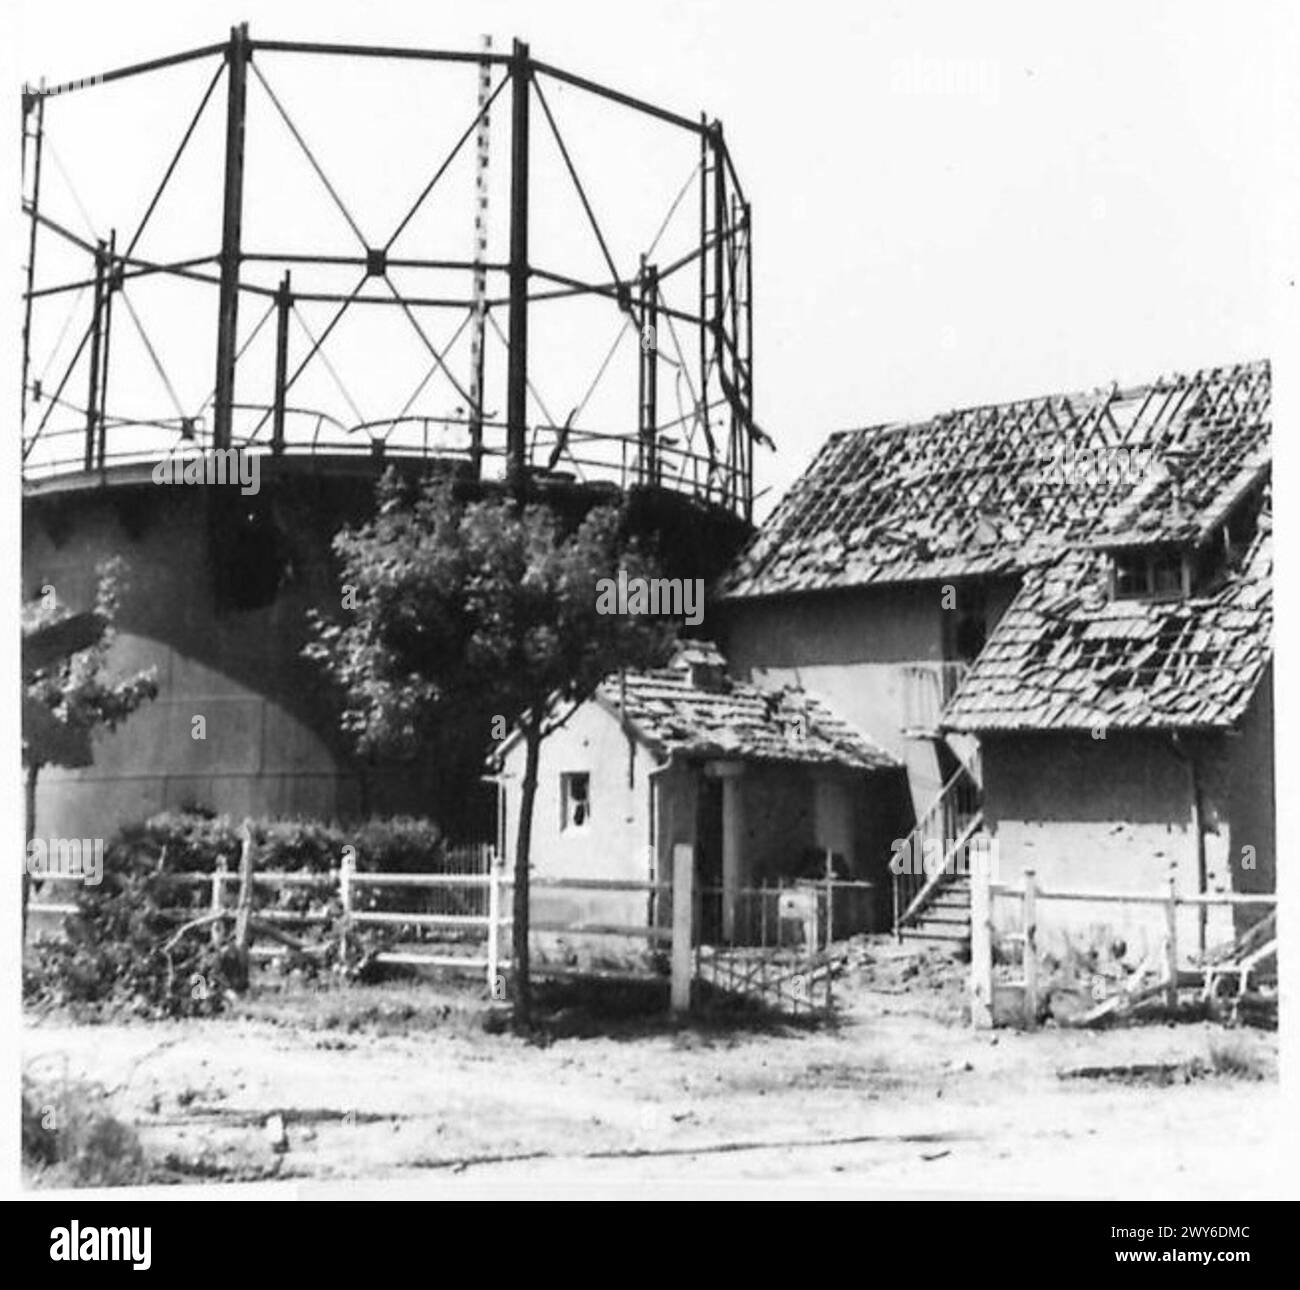 DIE BRITISCHE ARMEE IN NORDWESTEUROPA 1944-1945 - die Panzerung beschädigte das Gaswerk in Lion Dur Mer. Dieser Ort war von Scharfschützen befallen, die zahlreiche Opfer verursachten. Britische Armee, 21. Armeegruppe Stockfoto